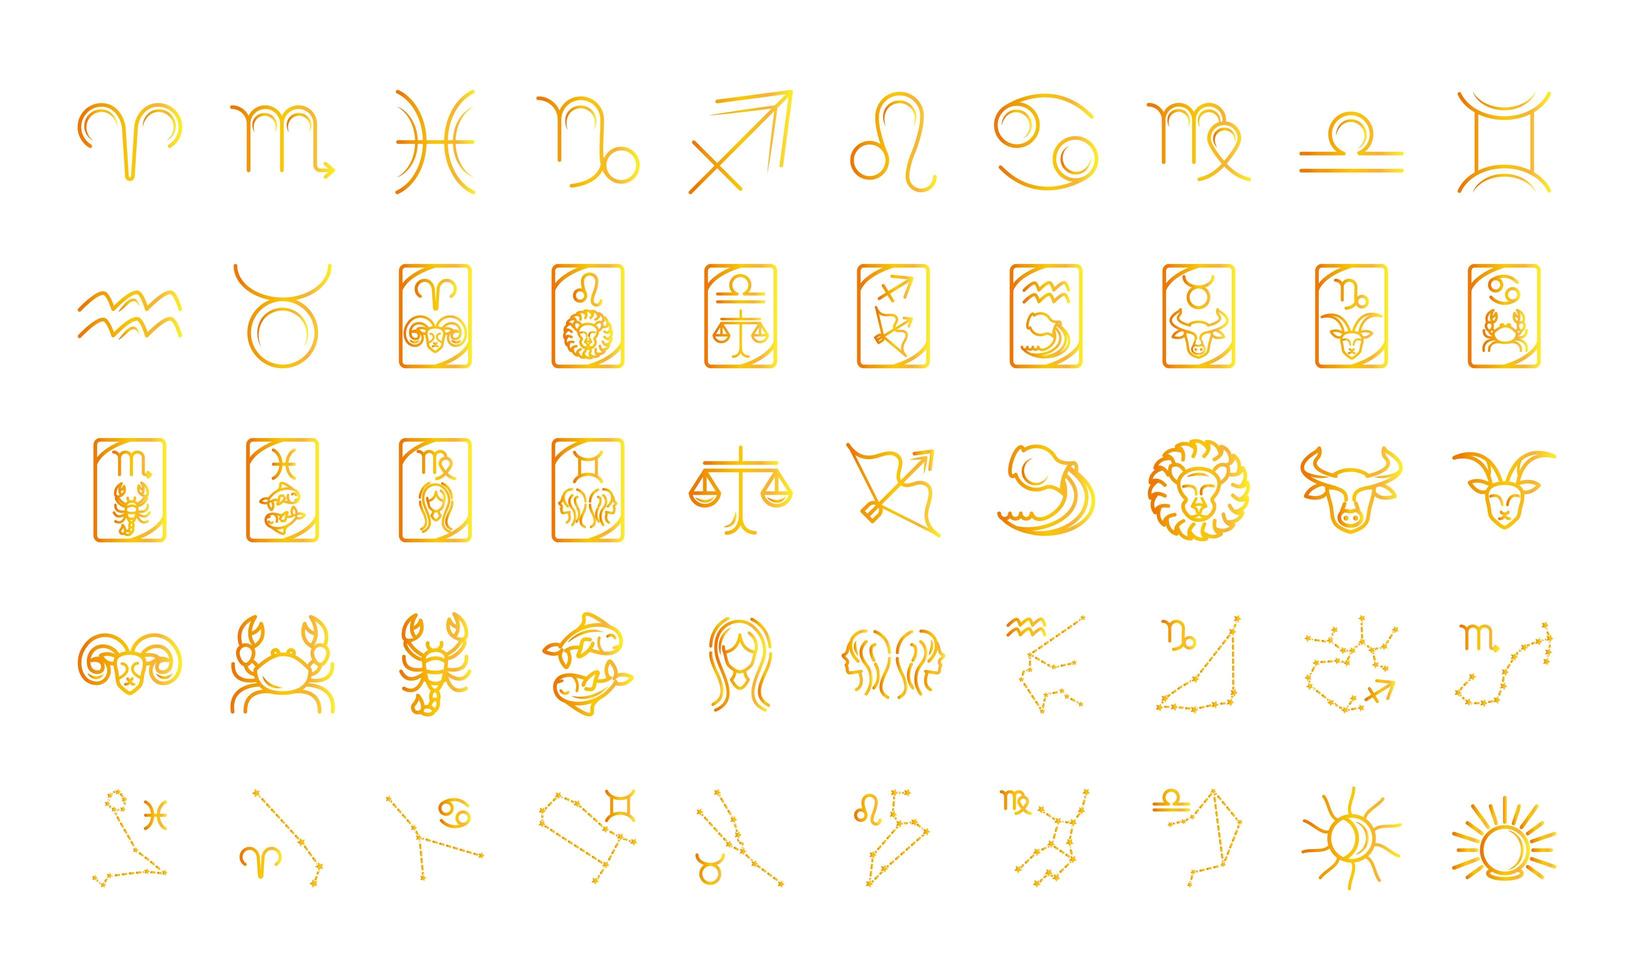 dierenriem astrologie horoscoop kalender sterrenbeeld pictogrammen collectie kleurovergang stijl vector